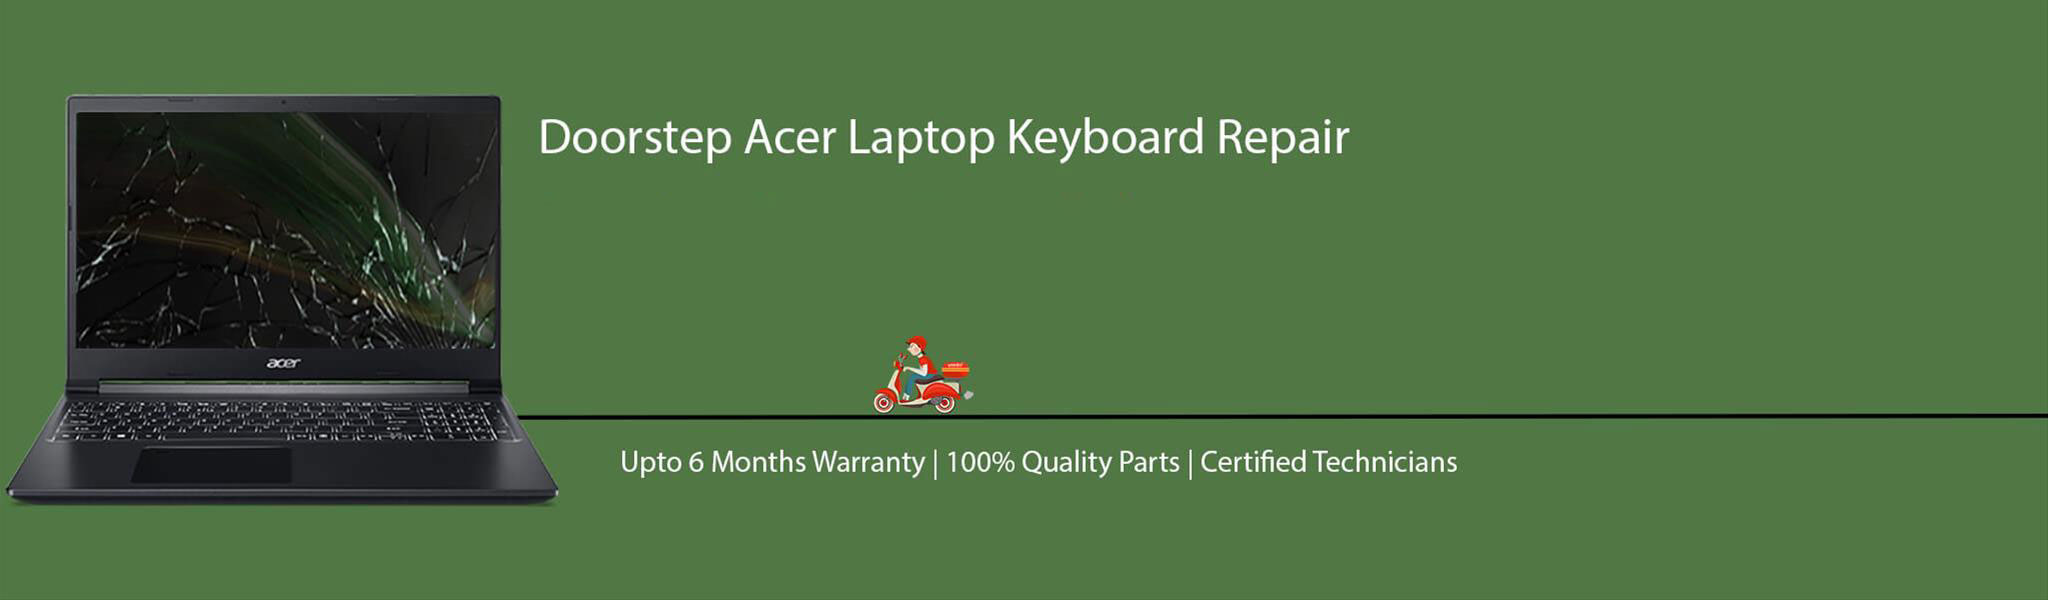 acer-laptop-keyboard-repair.jpg